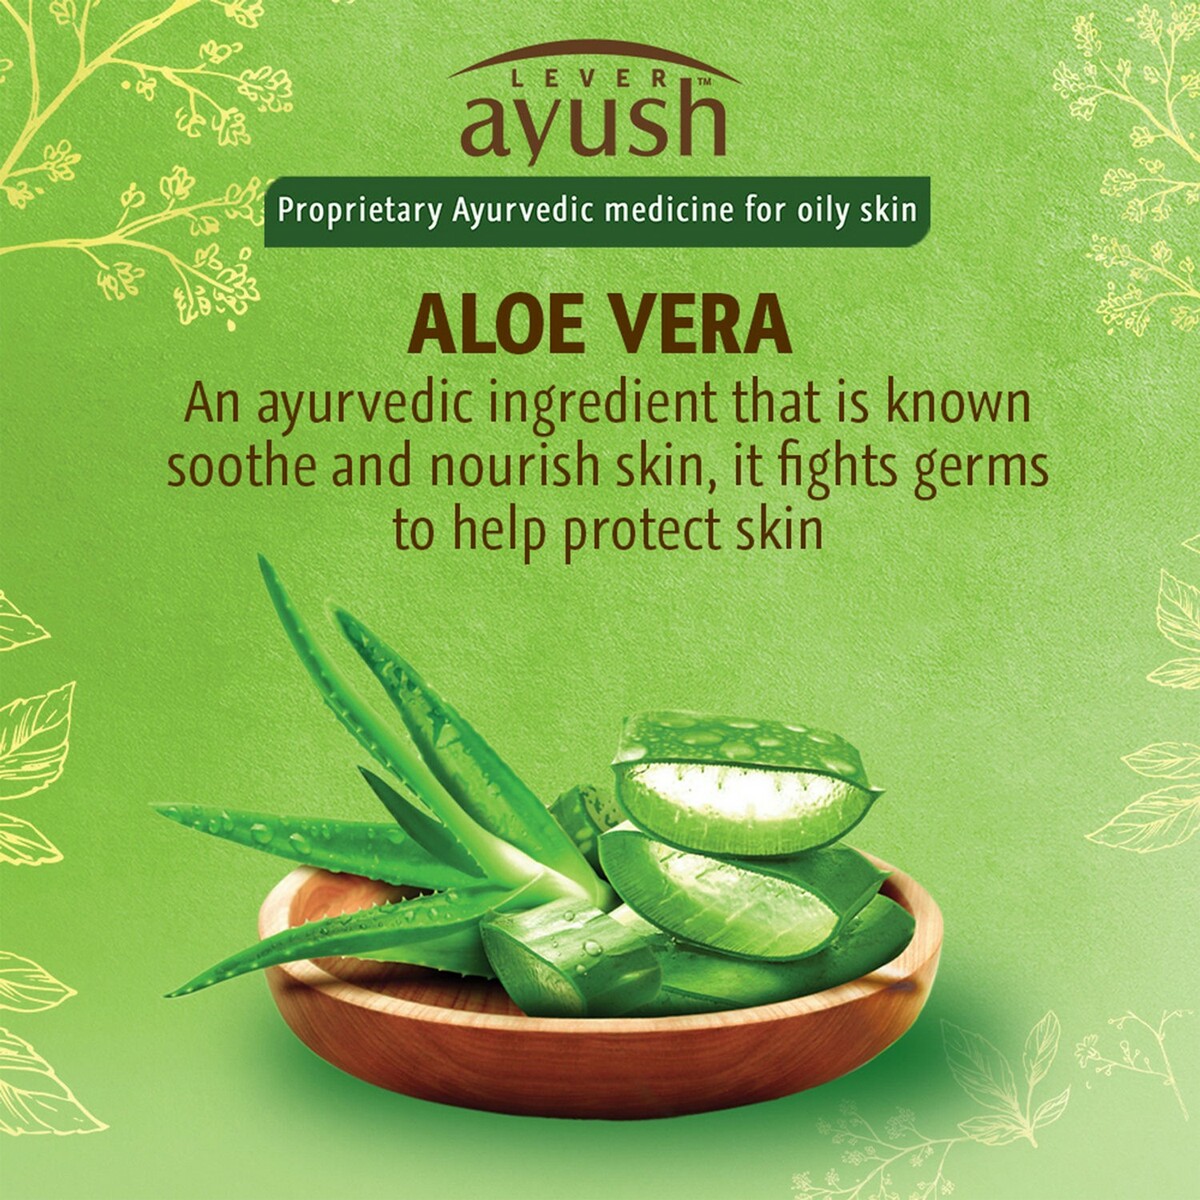 Ayush Face Wash Oil Clear Aloe Vera 80g